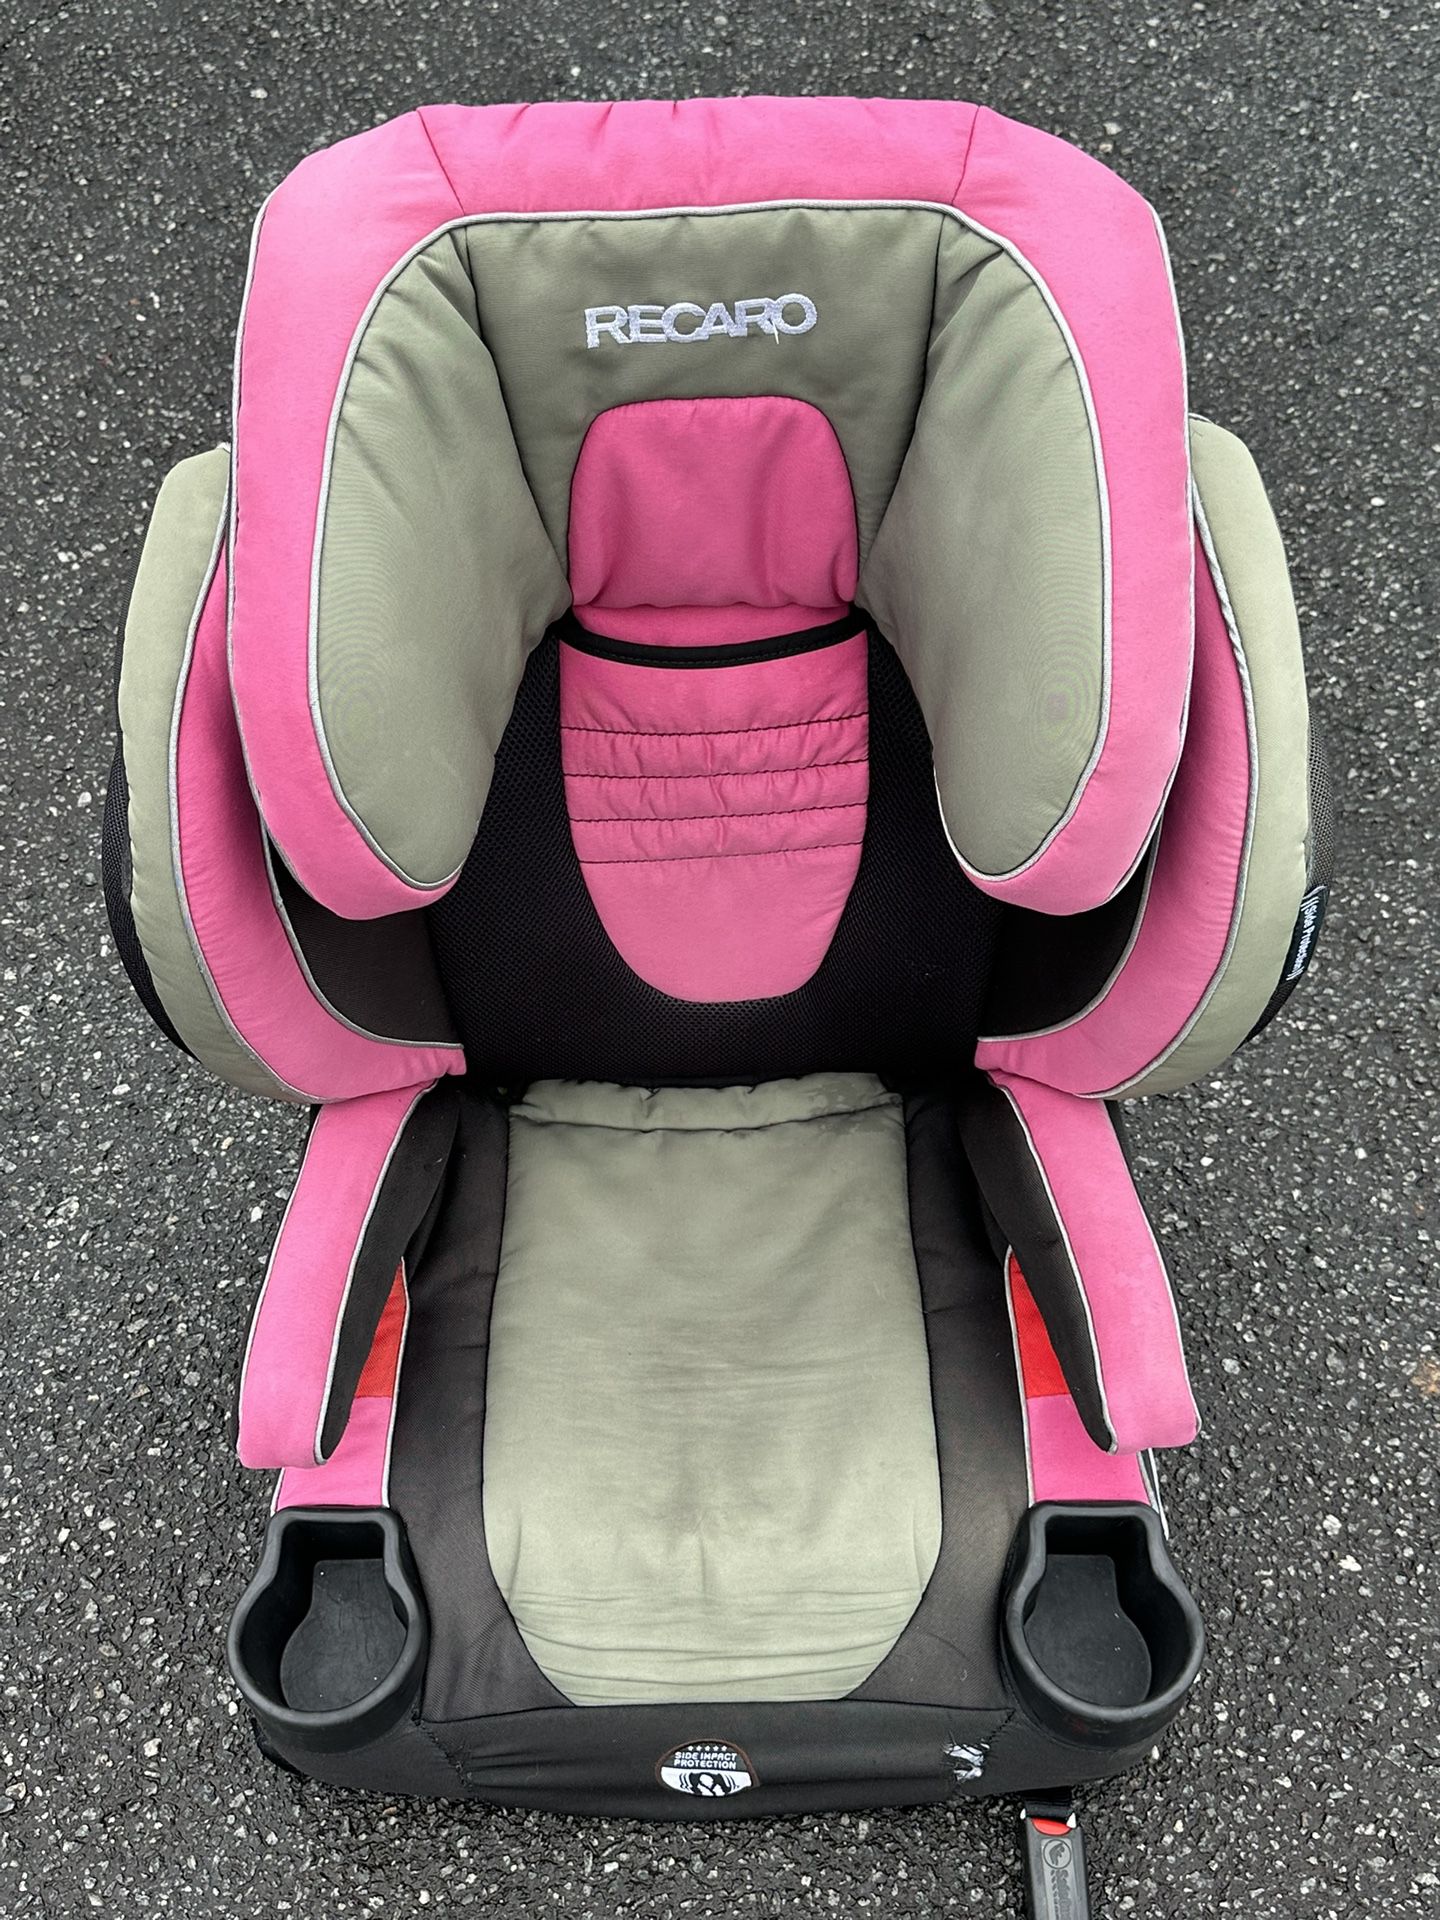 Recaro Baby Booster Car Seat 